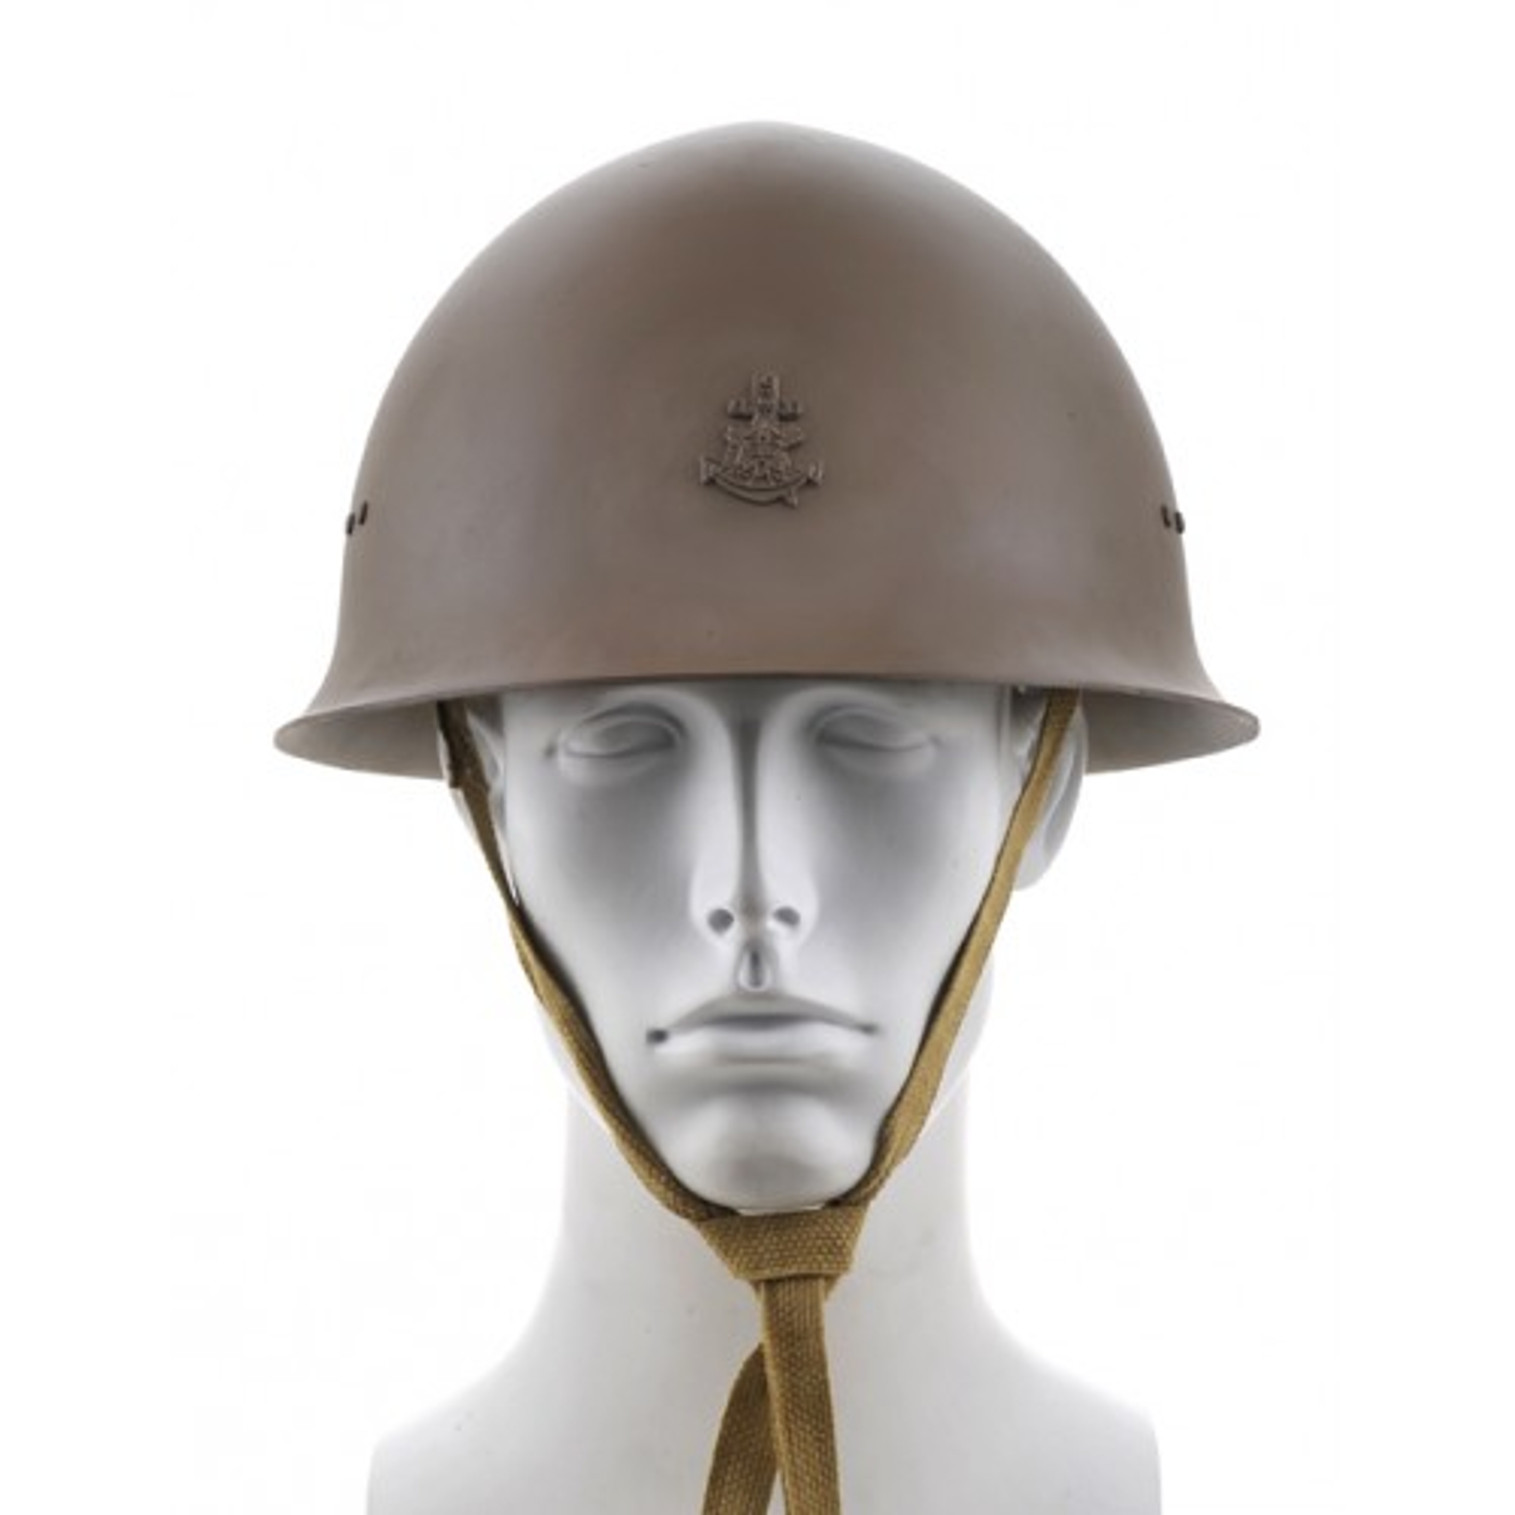 Japanese Imperial Naval Landing Forces Helmet